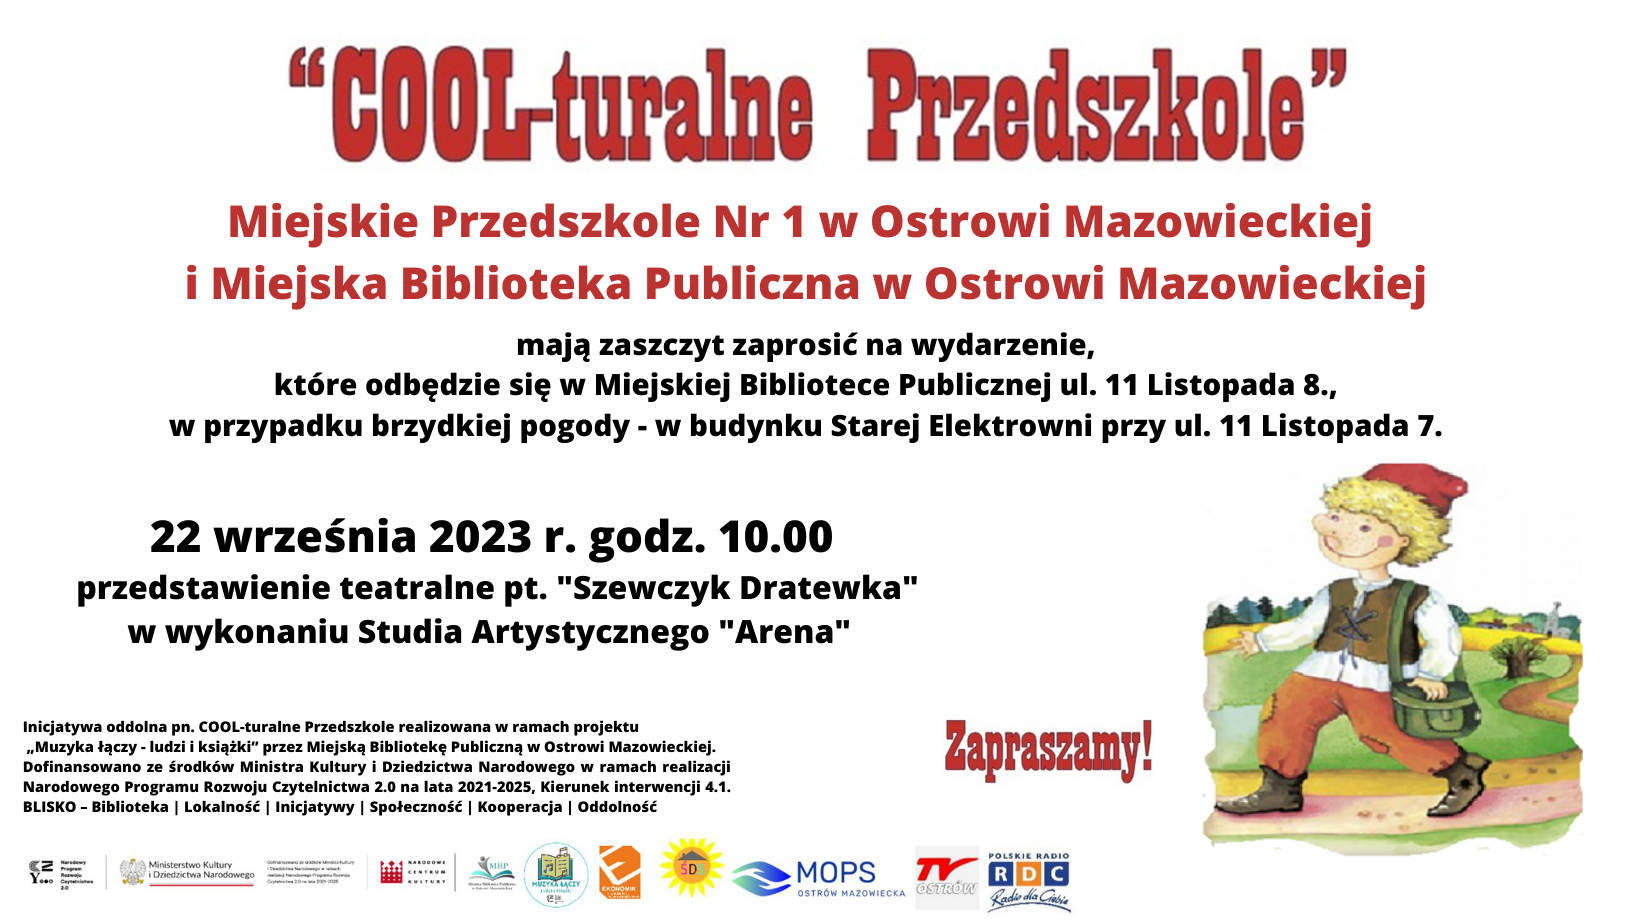 Cool-turalne Przedszkole - teatrzyk pt. "Szewczyk Dratewka", godz. 10.00 MBP w Ostrowi Mazowieckiej